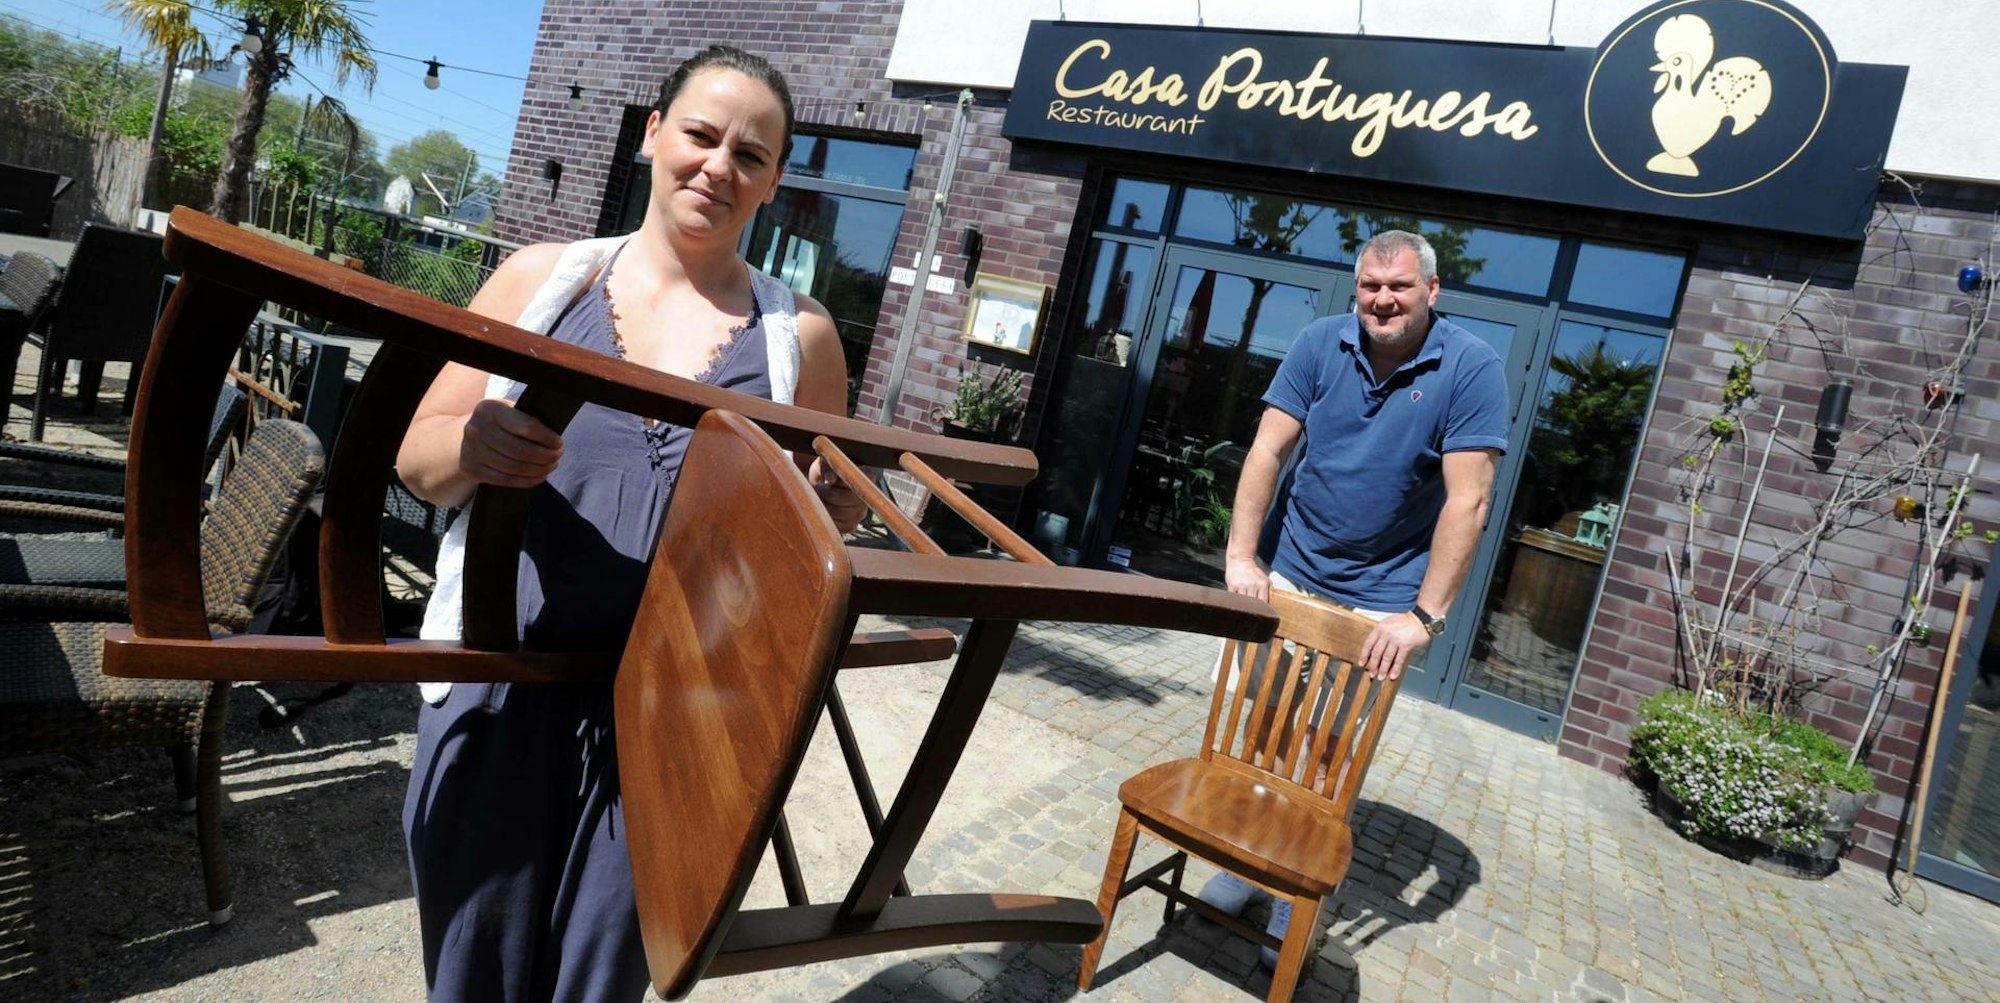 Tatiana Goncalves Herborn von der Casa Portuguesa will mit einem leeren Stuhl für mehr Hilfen demonstrieren.